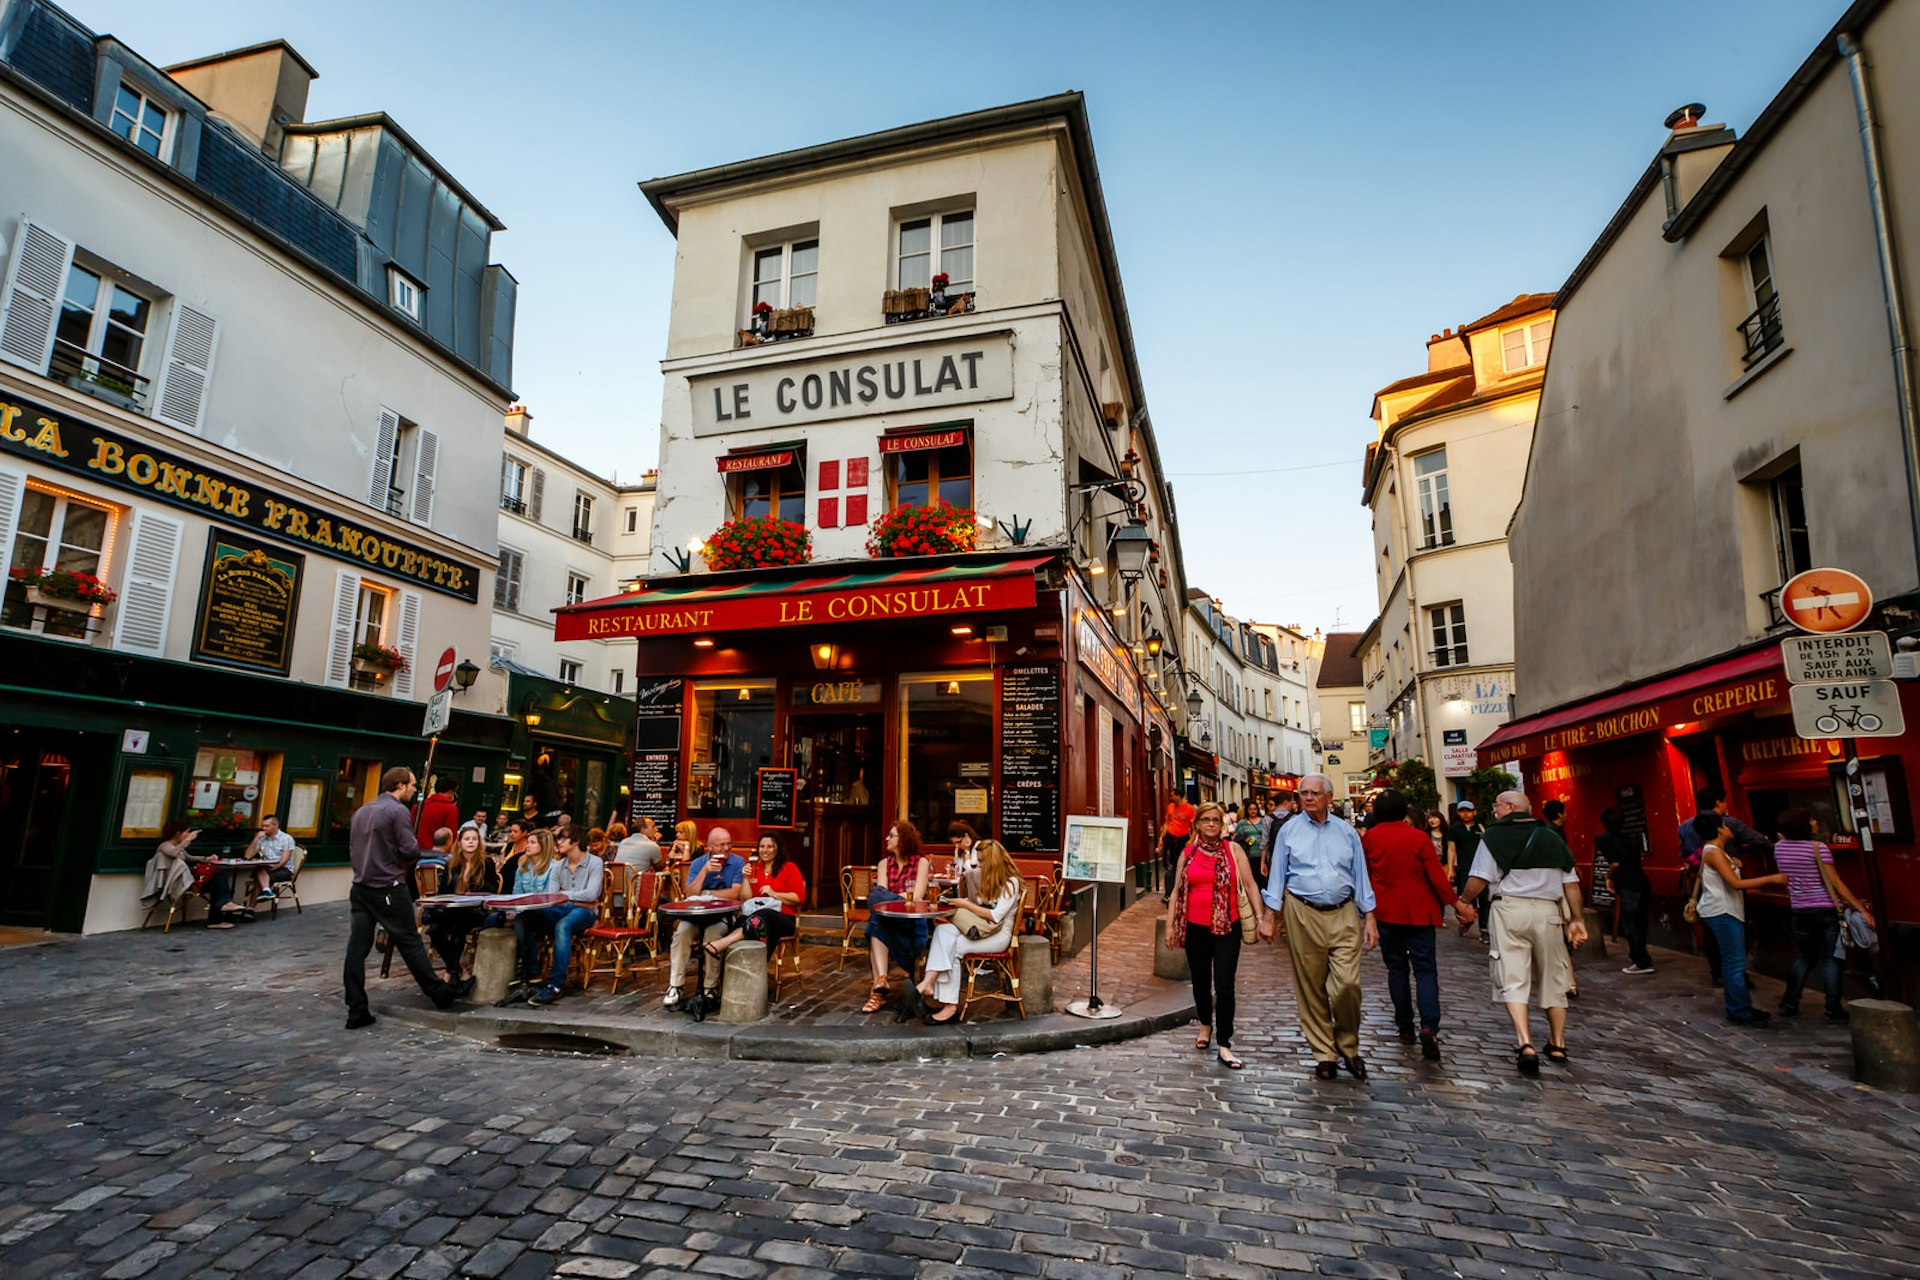 Neighborhood street scene in Montmartre in the 18th Arrondissement, Paris